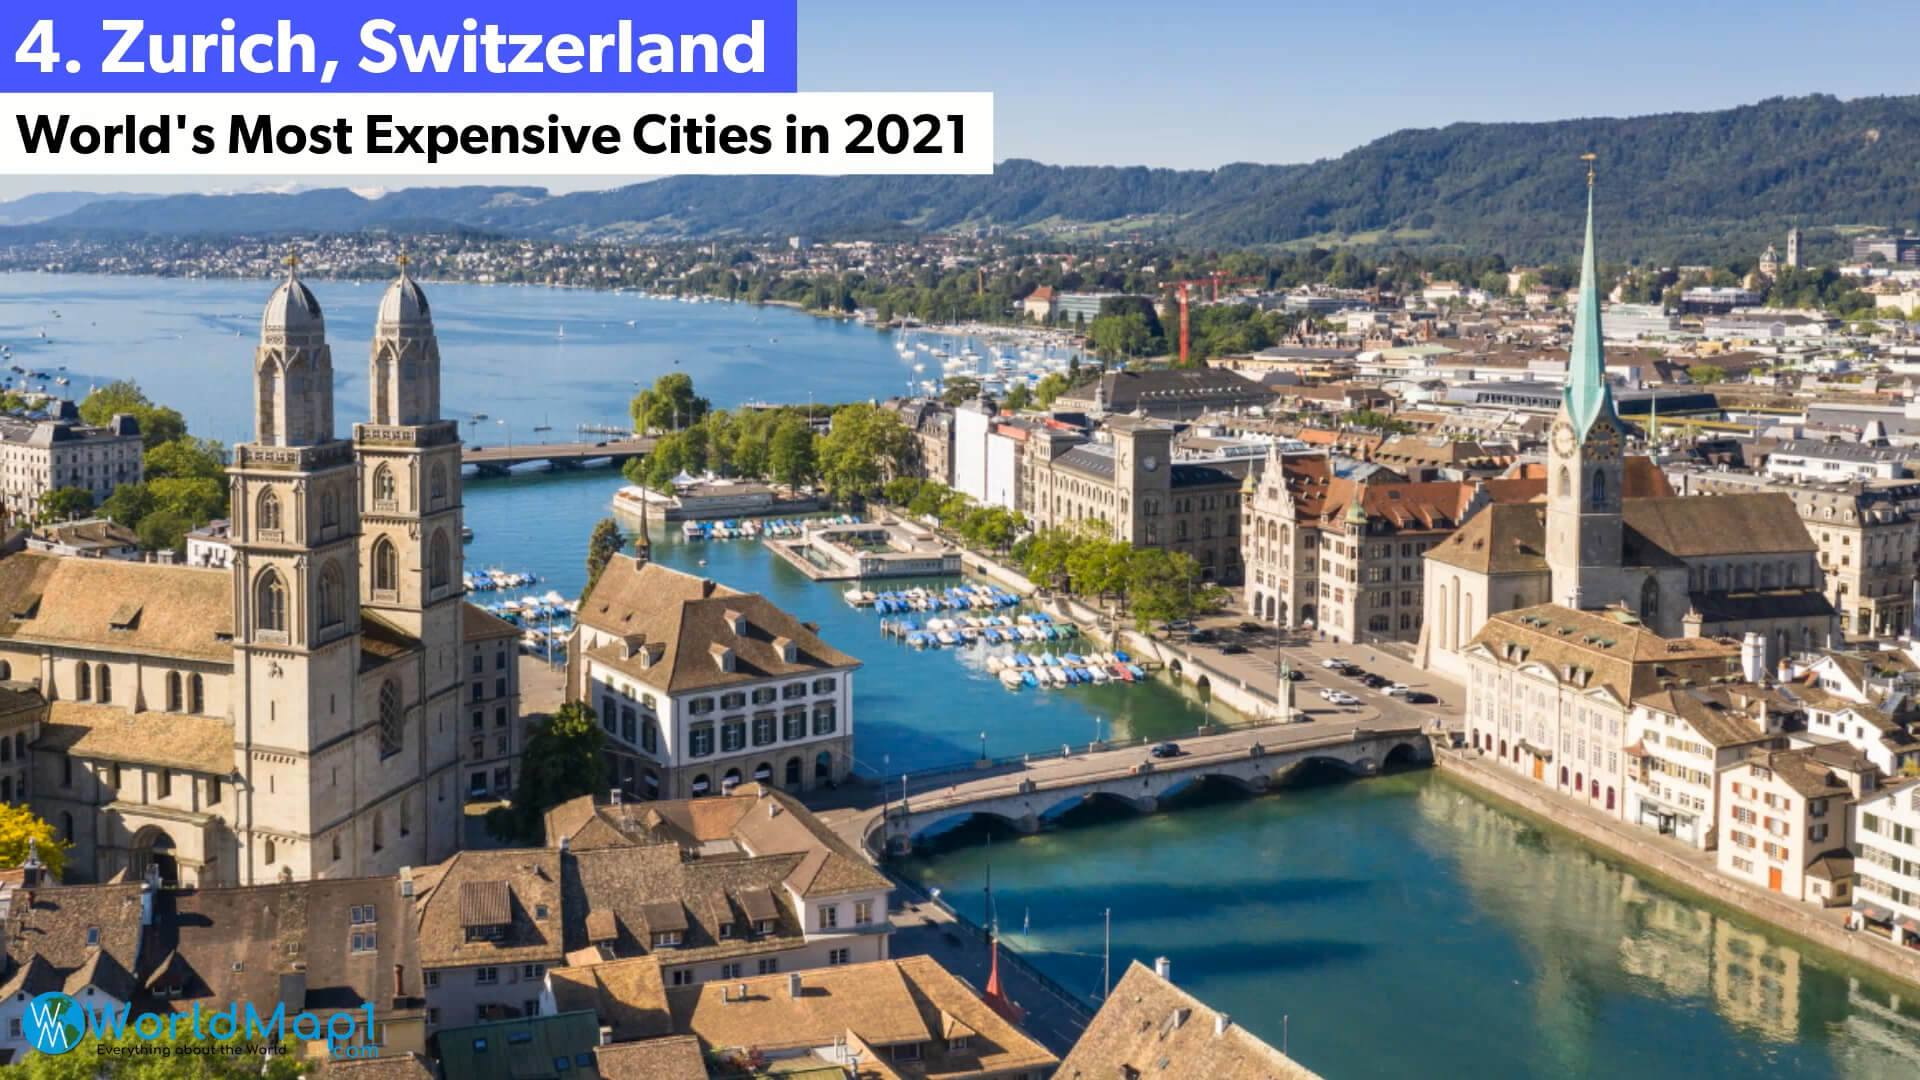 Les villes les plus chères du monde - Zurich, Suisse